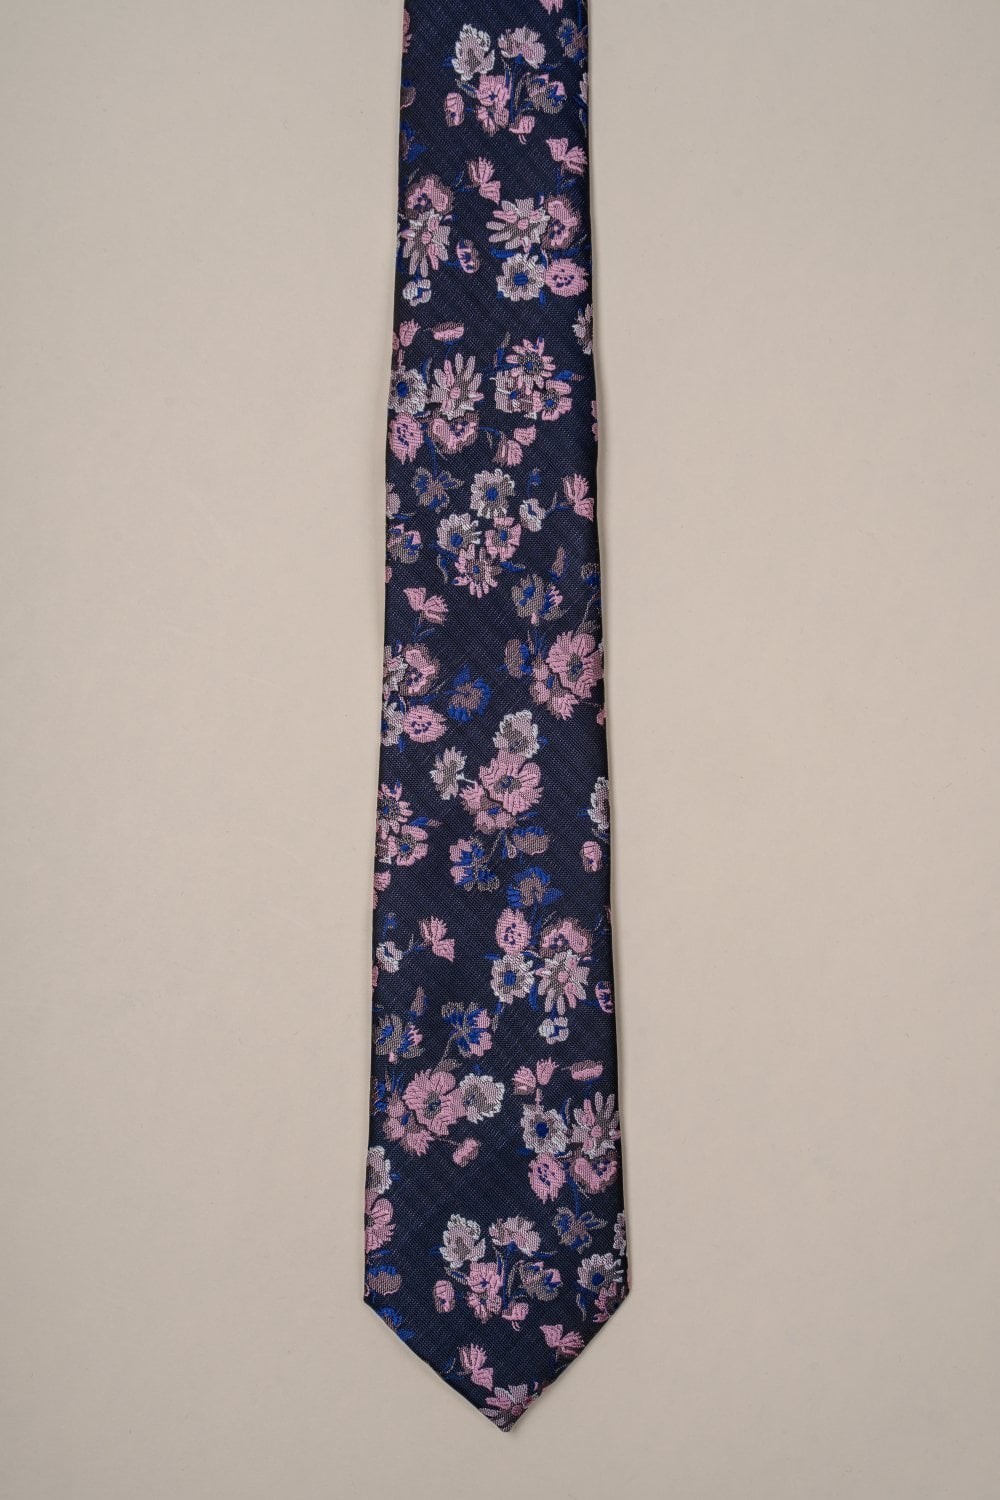 Cravate à motif floral pour hommes - Navy and Pink